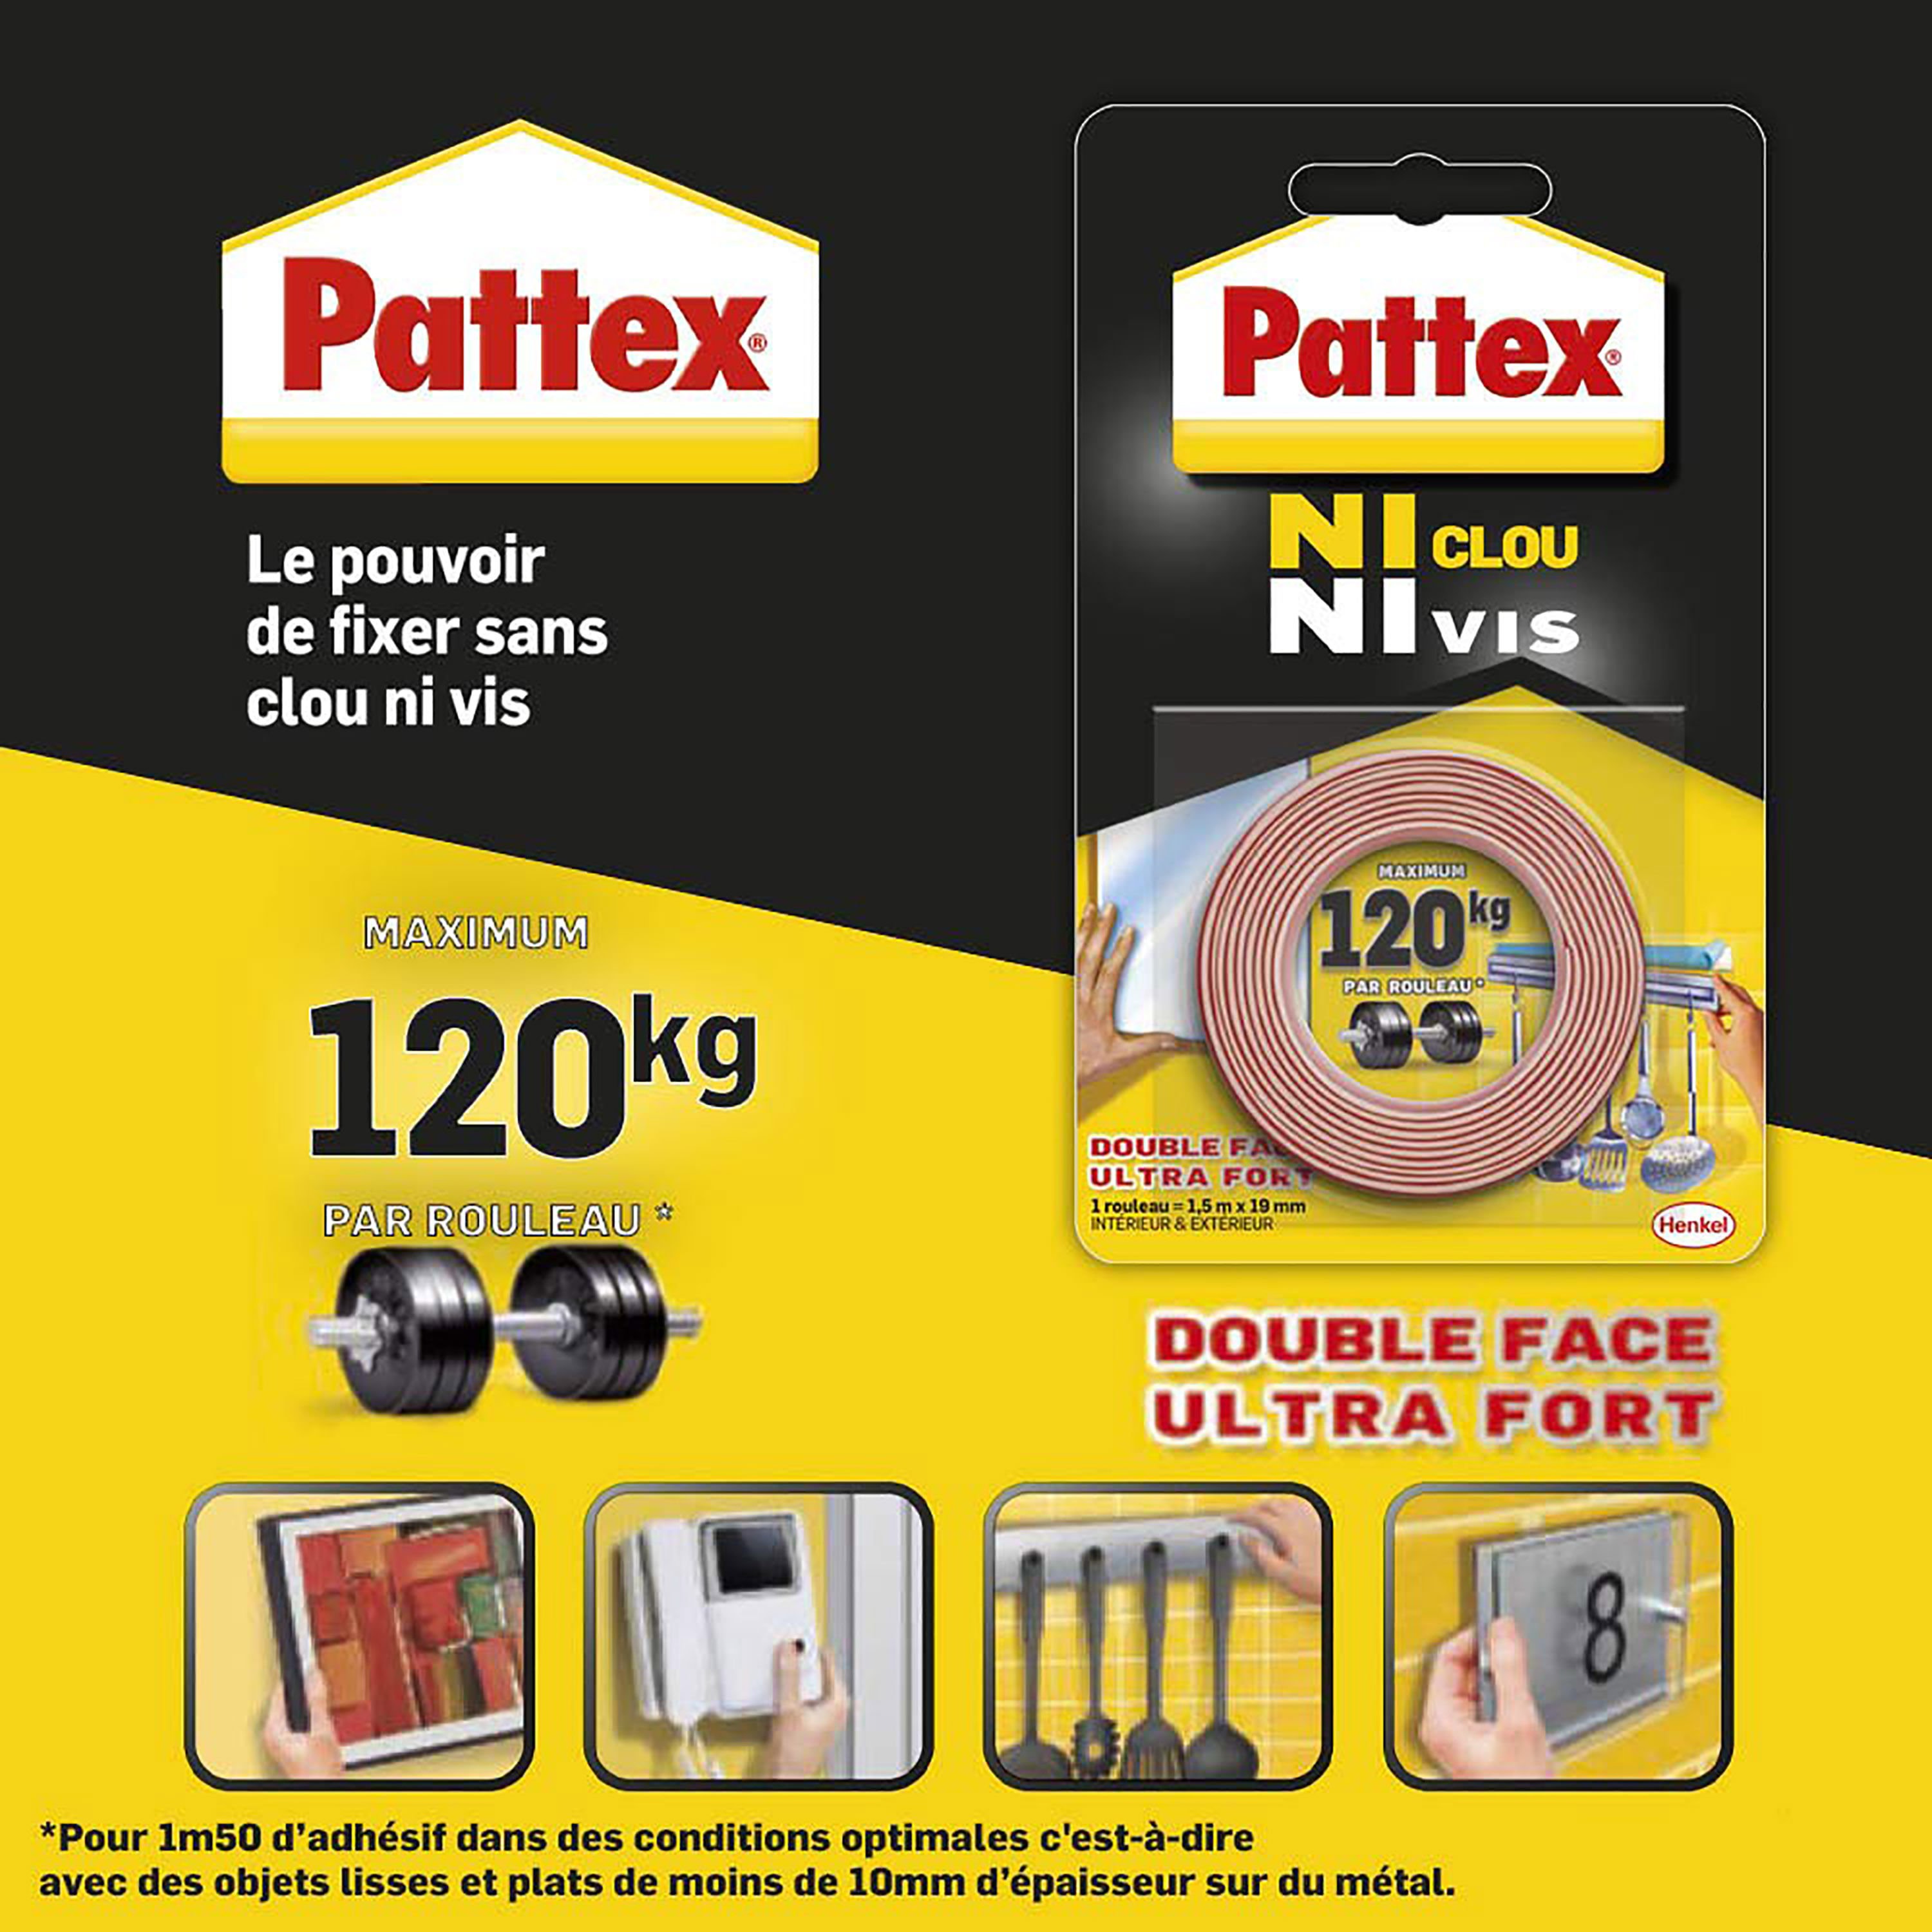 Pattex No Más Clavos Original, adhesivo de montaje resistente